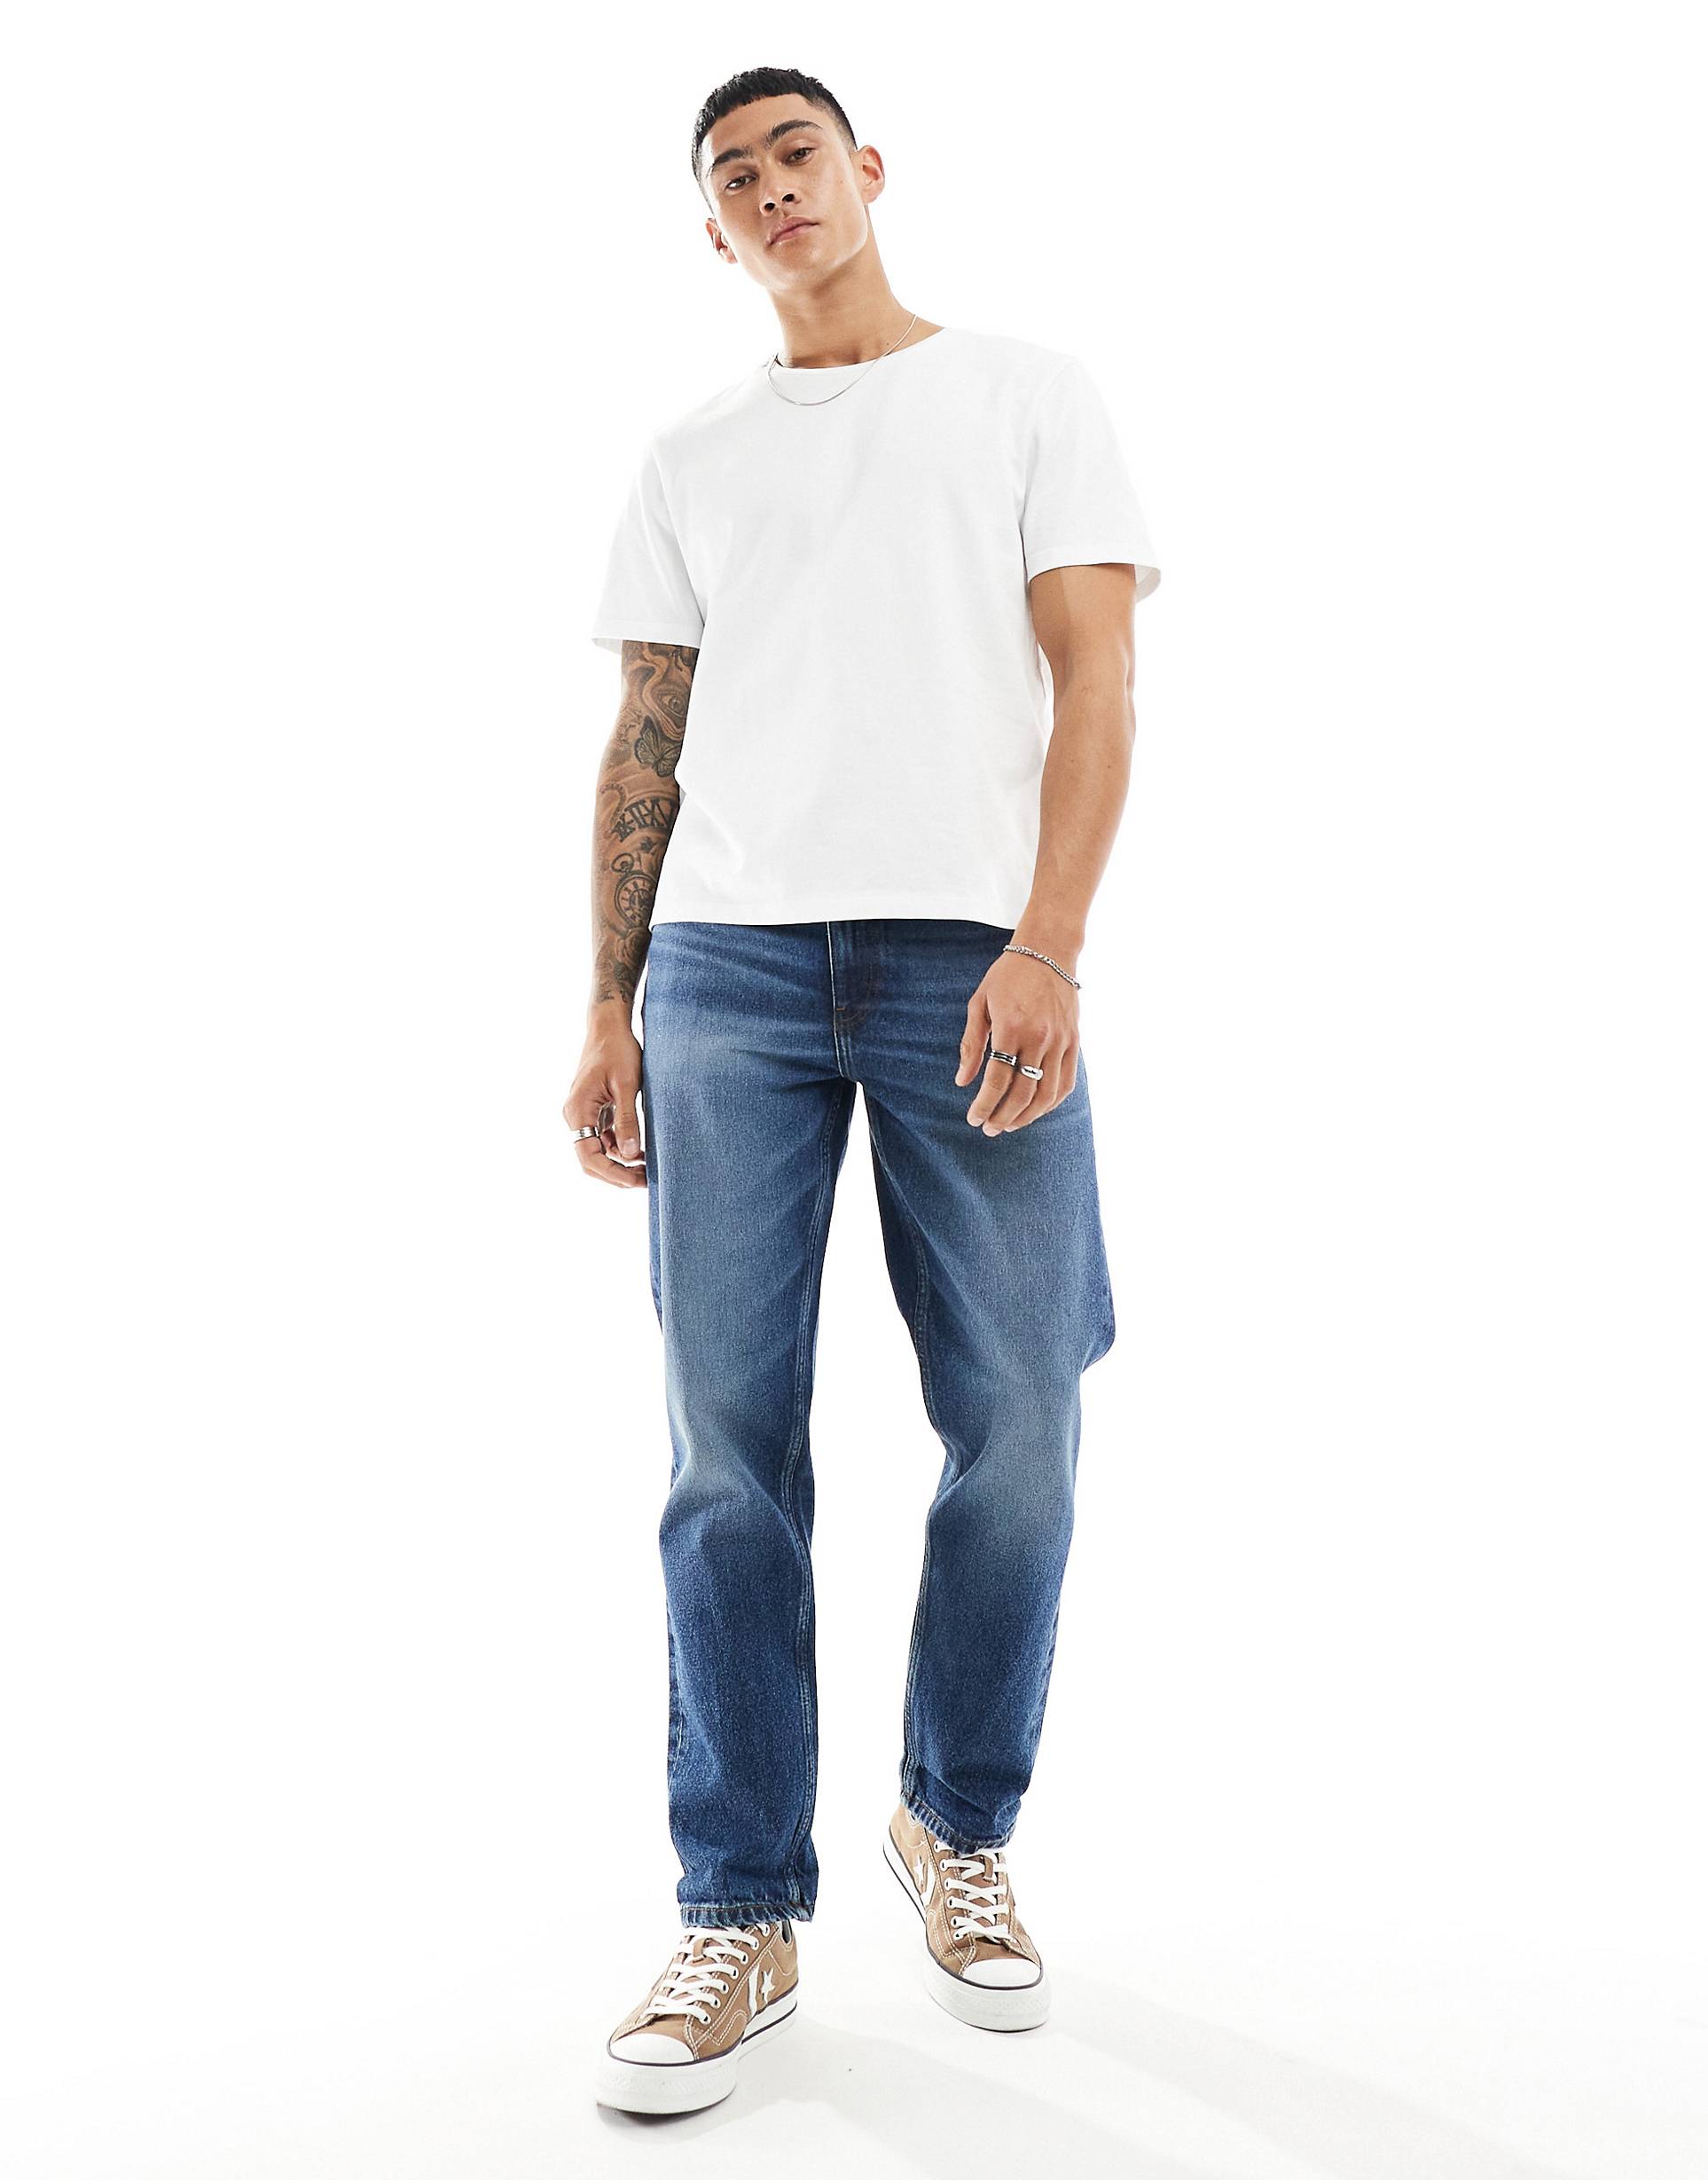 Джинсы Asos Design Straight Leg, синий синие джинсы скинни asos в винтажном стиле